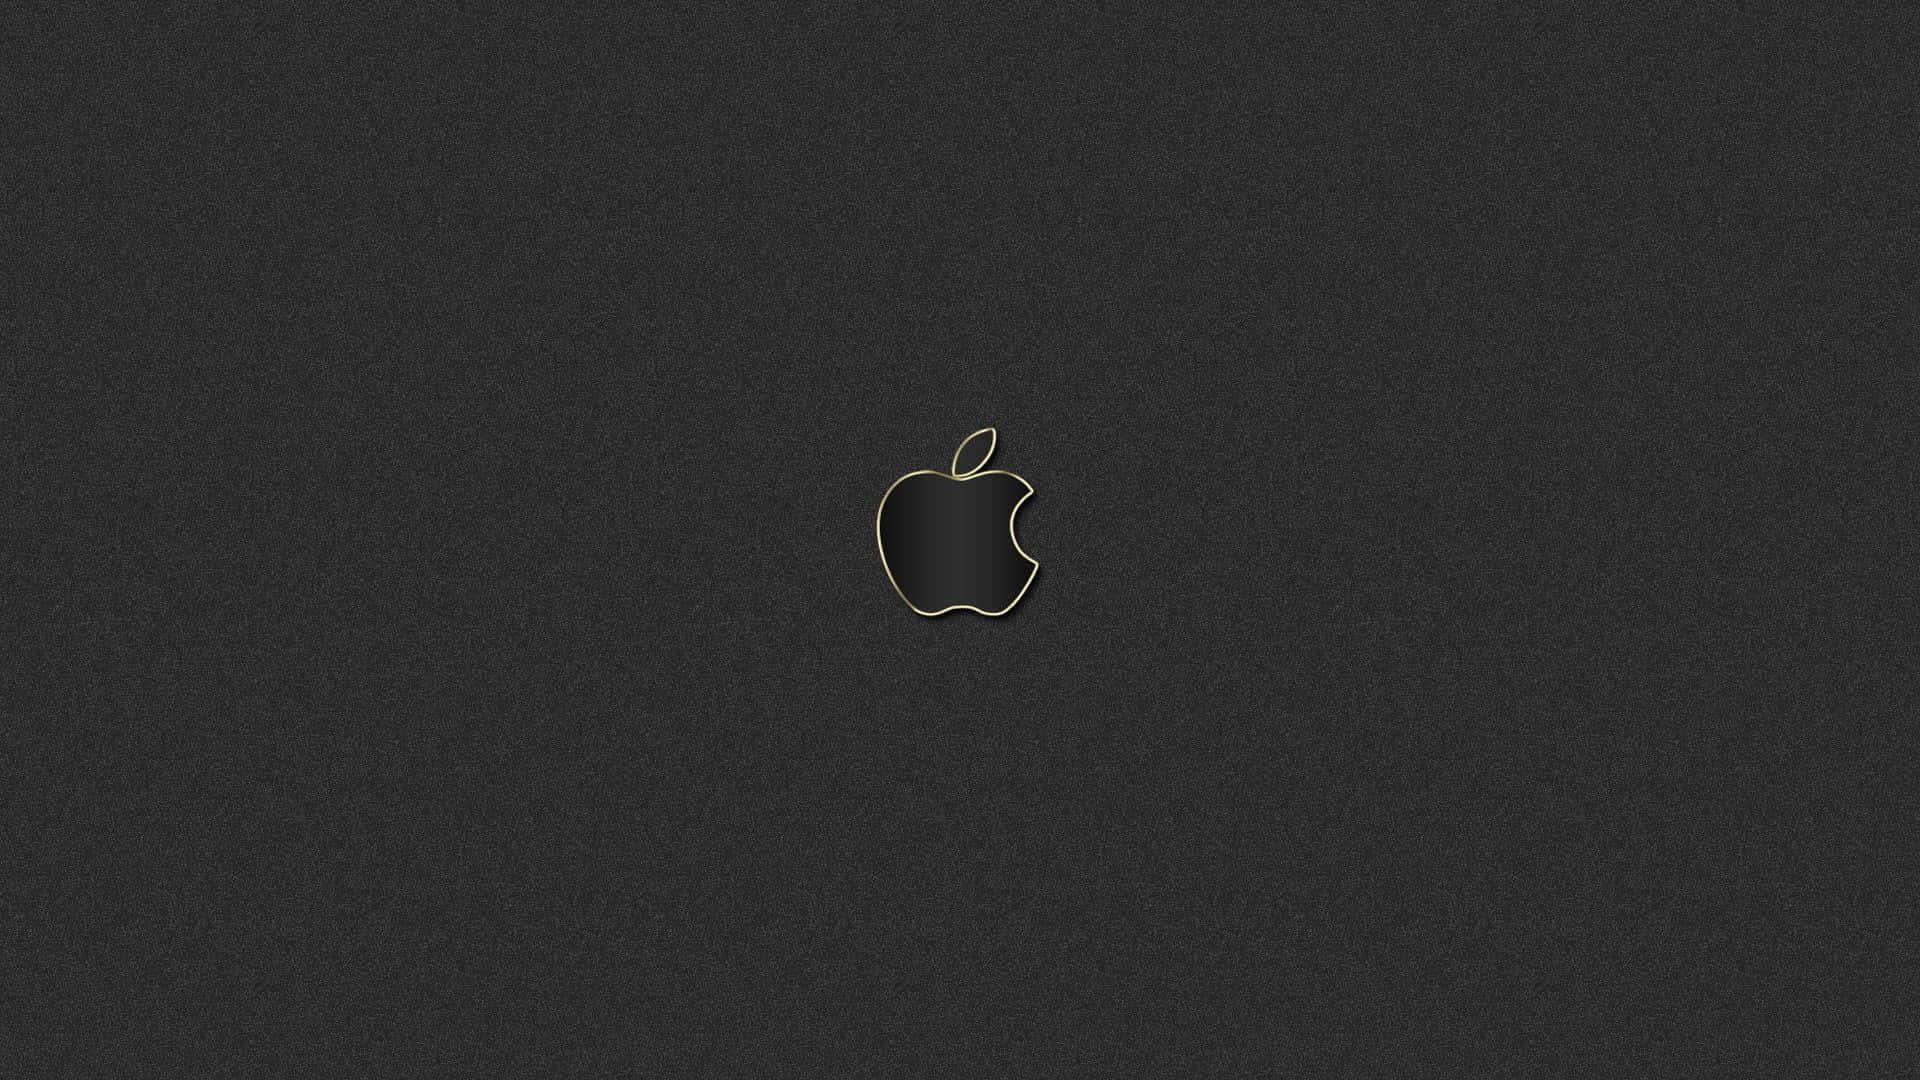 Logode Apple En Negro Sobre Fondo Gris Oscuro. Fondo de pantalla